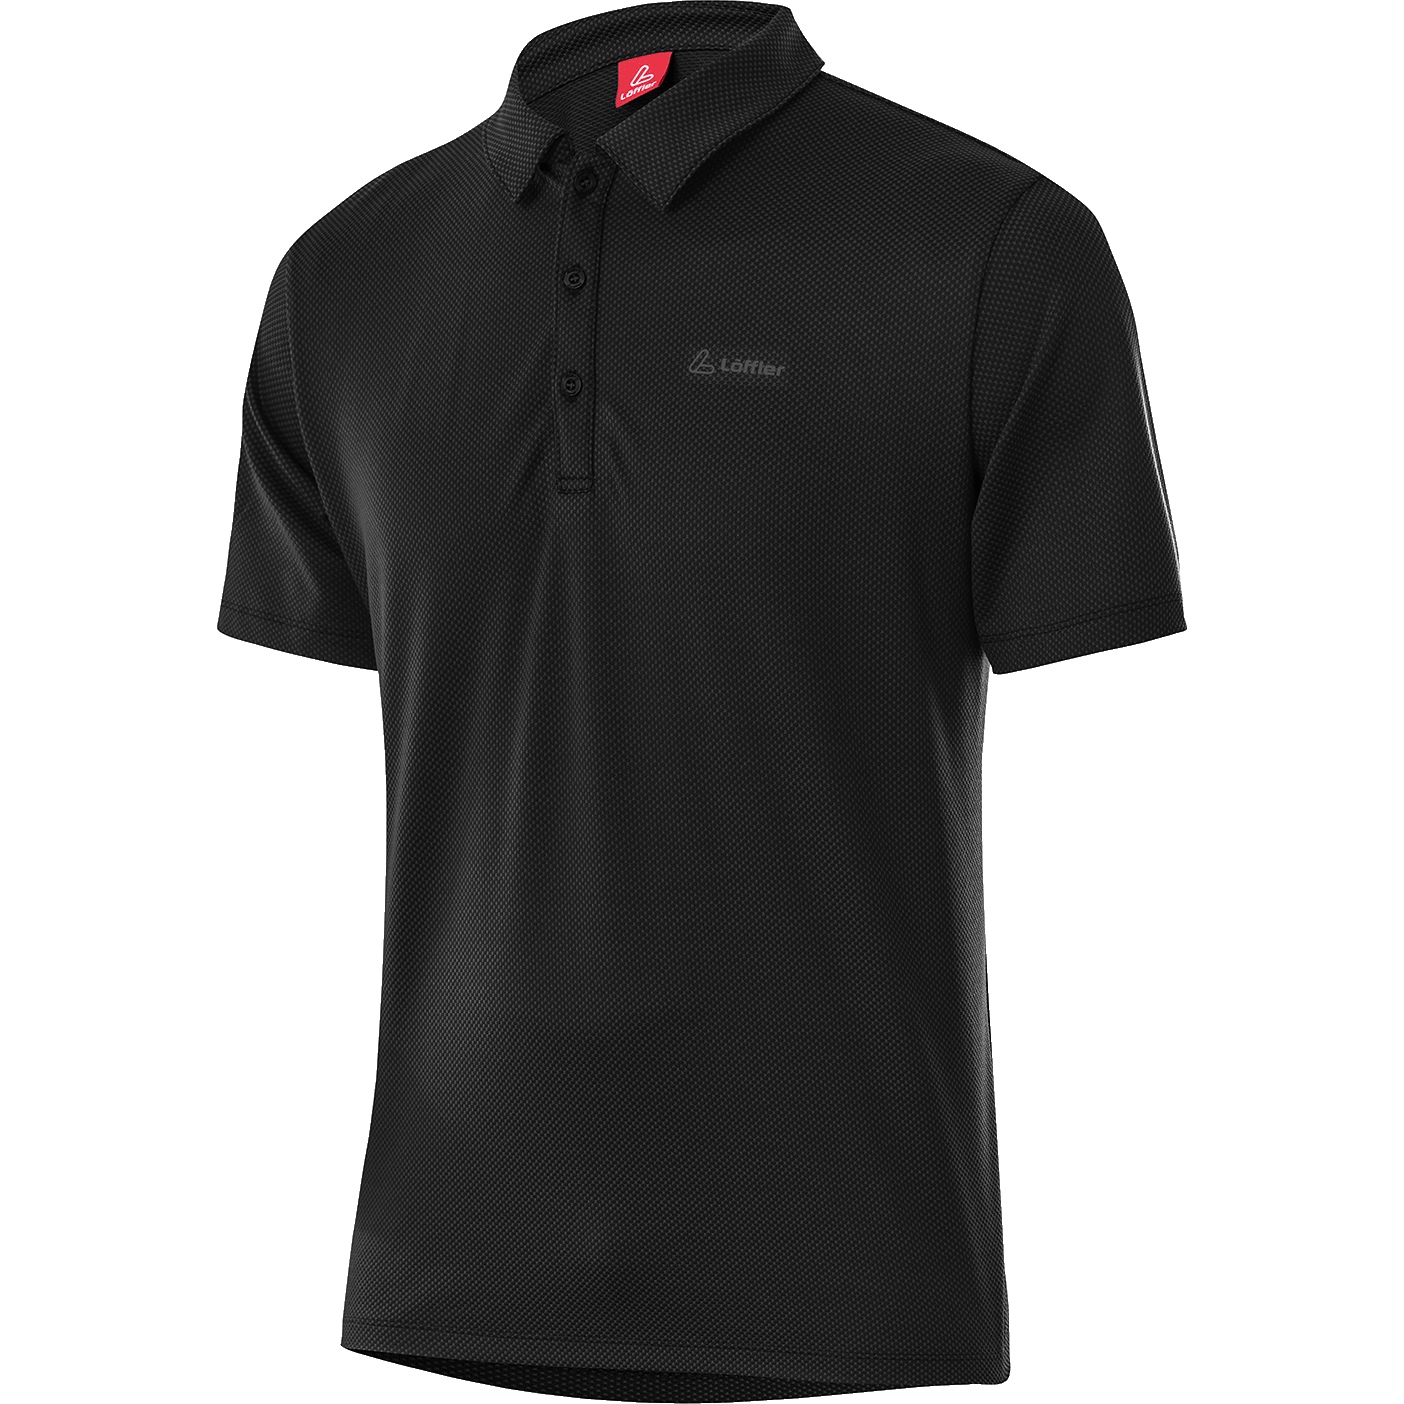 Produktbild von Löffler Tencel™ Comfort Poloshirt Herren - schwarz 990